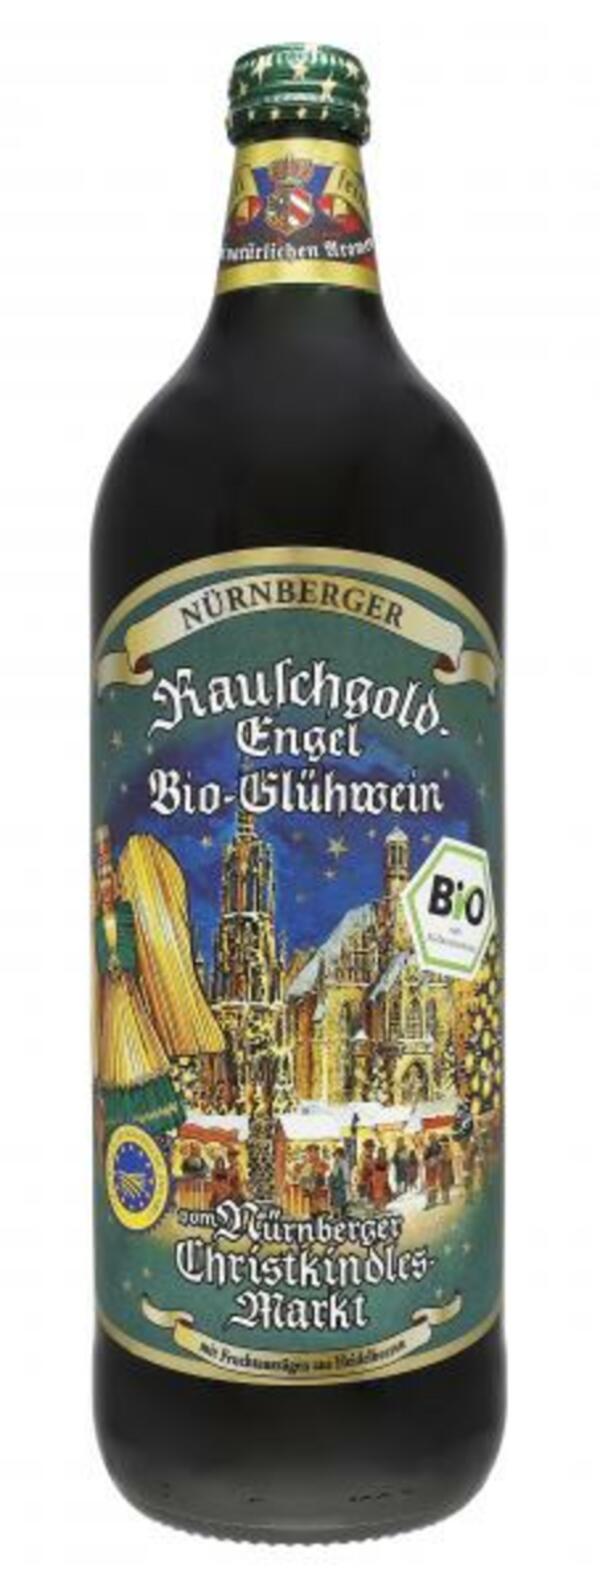 Bild 1 von Nürnberger Rauschgold Christkindlesmarkt Glühwein